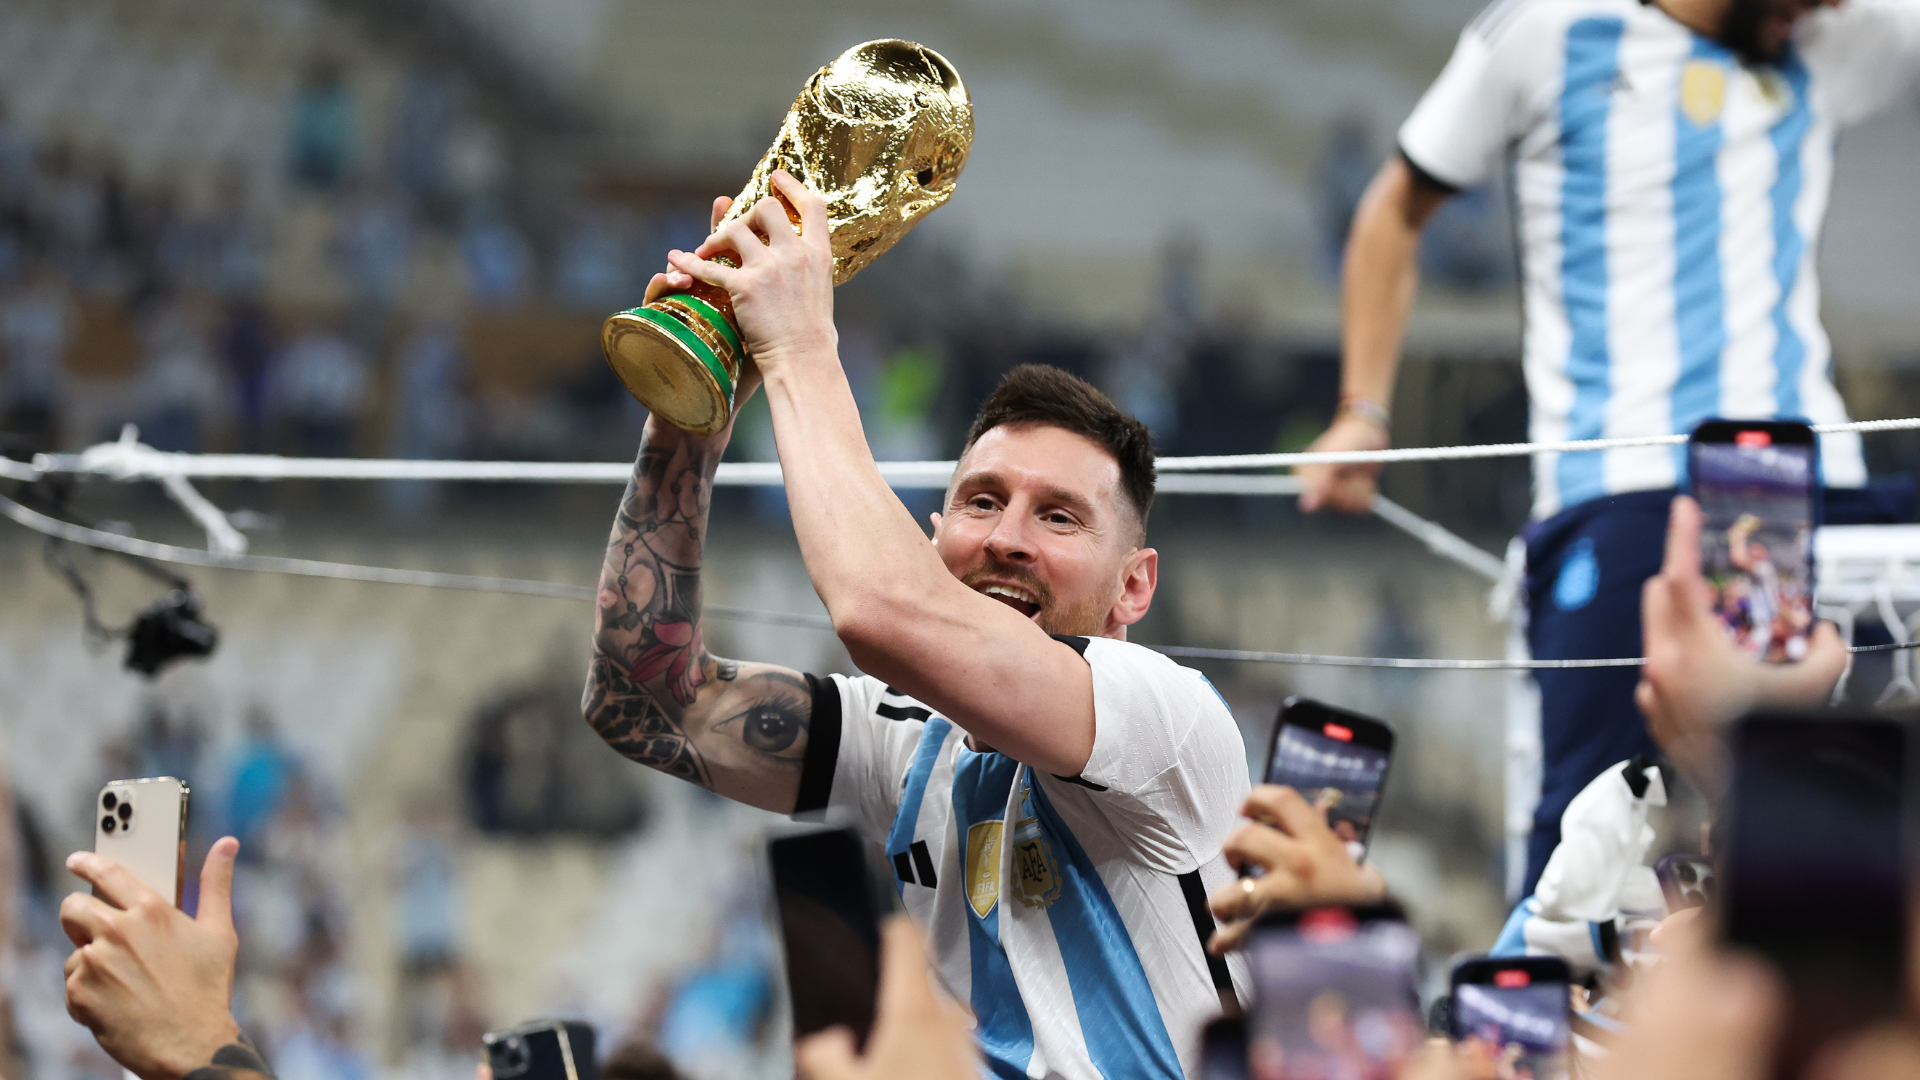 Qué llevaba puesto Leo Messi cuando levantaba el trofeo de campeón del Mundial con Argentina en Qatar 2022?. DAZN News España